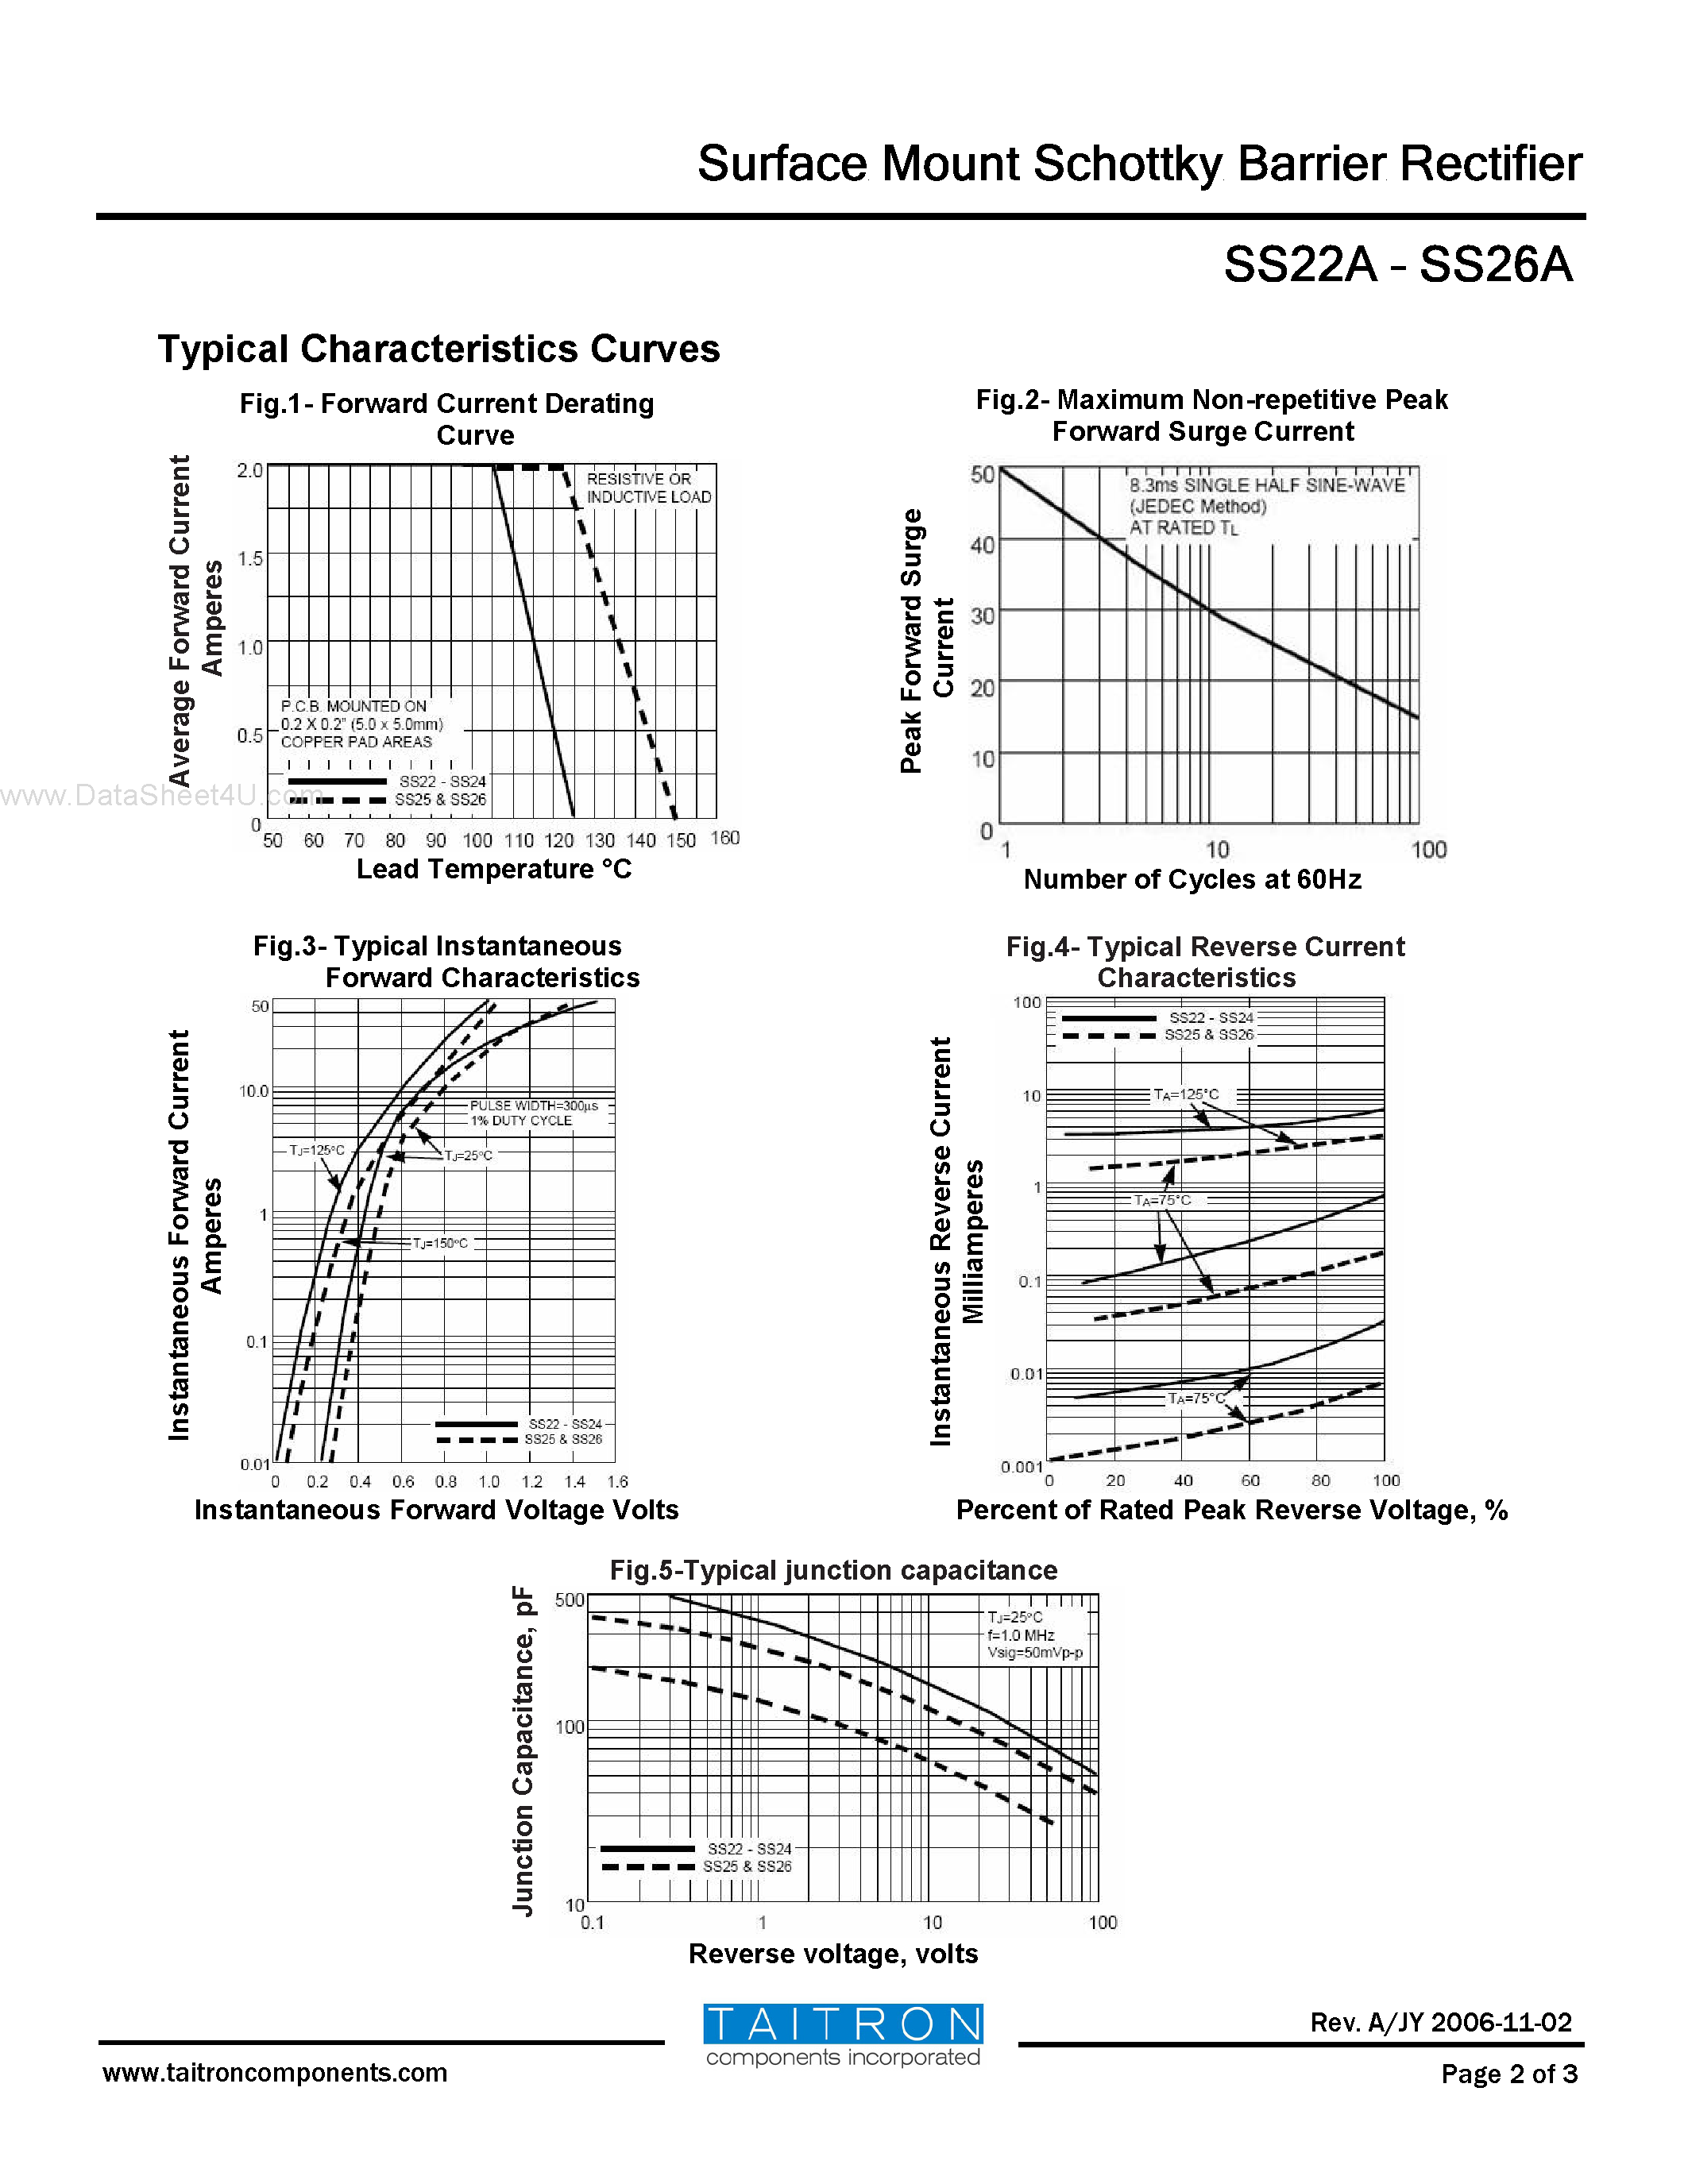 Datasheet SS22A - (SS22A - SS26A) Surface Mount Schottky Barrier Rectifier page 2